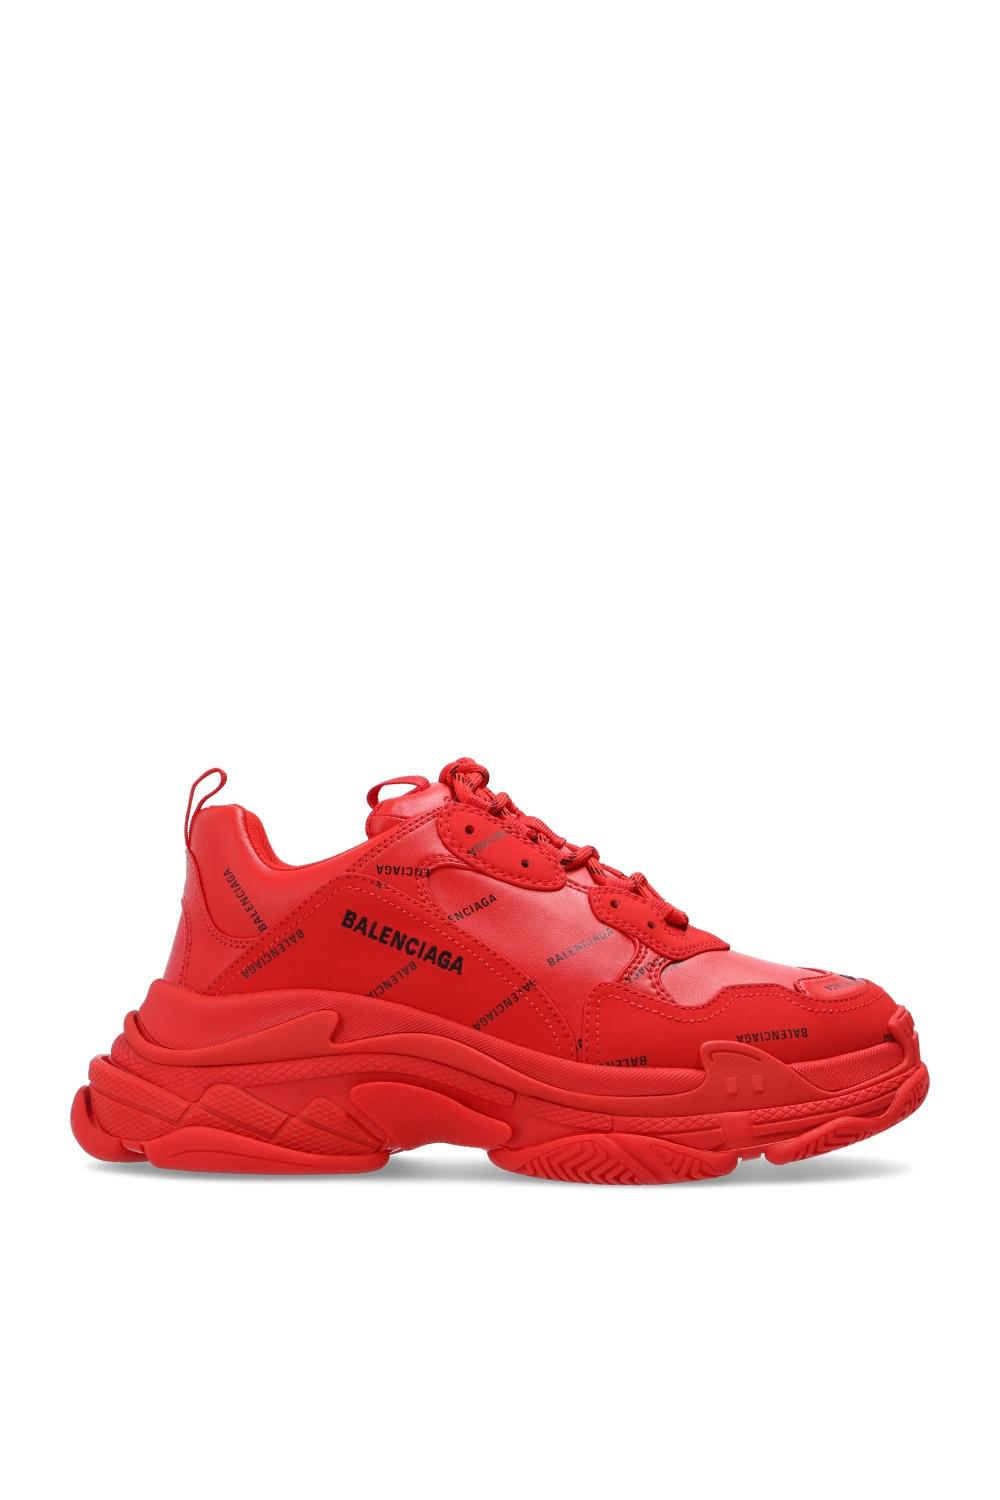 Balenciaga Triple S Clear Sole Sneaker in Red | Lyst